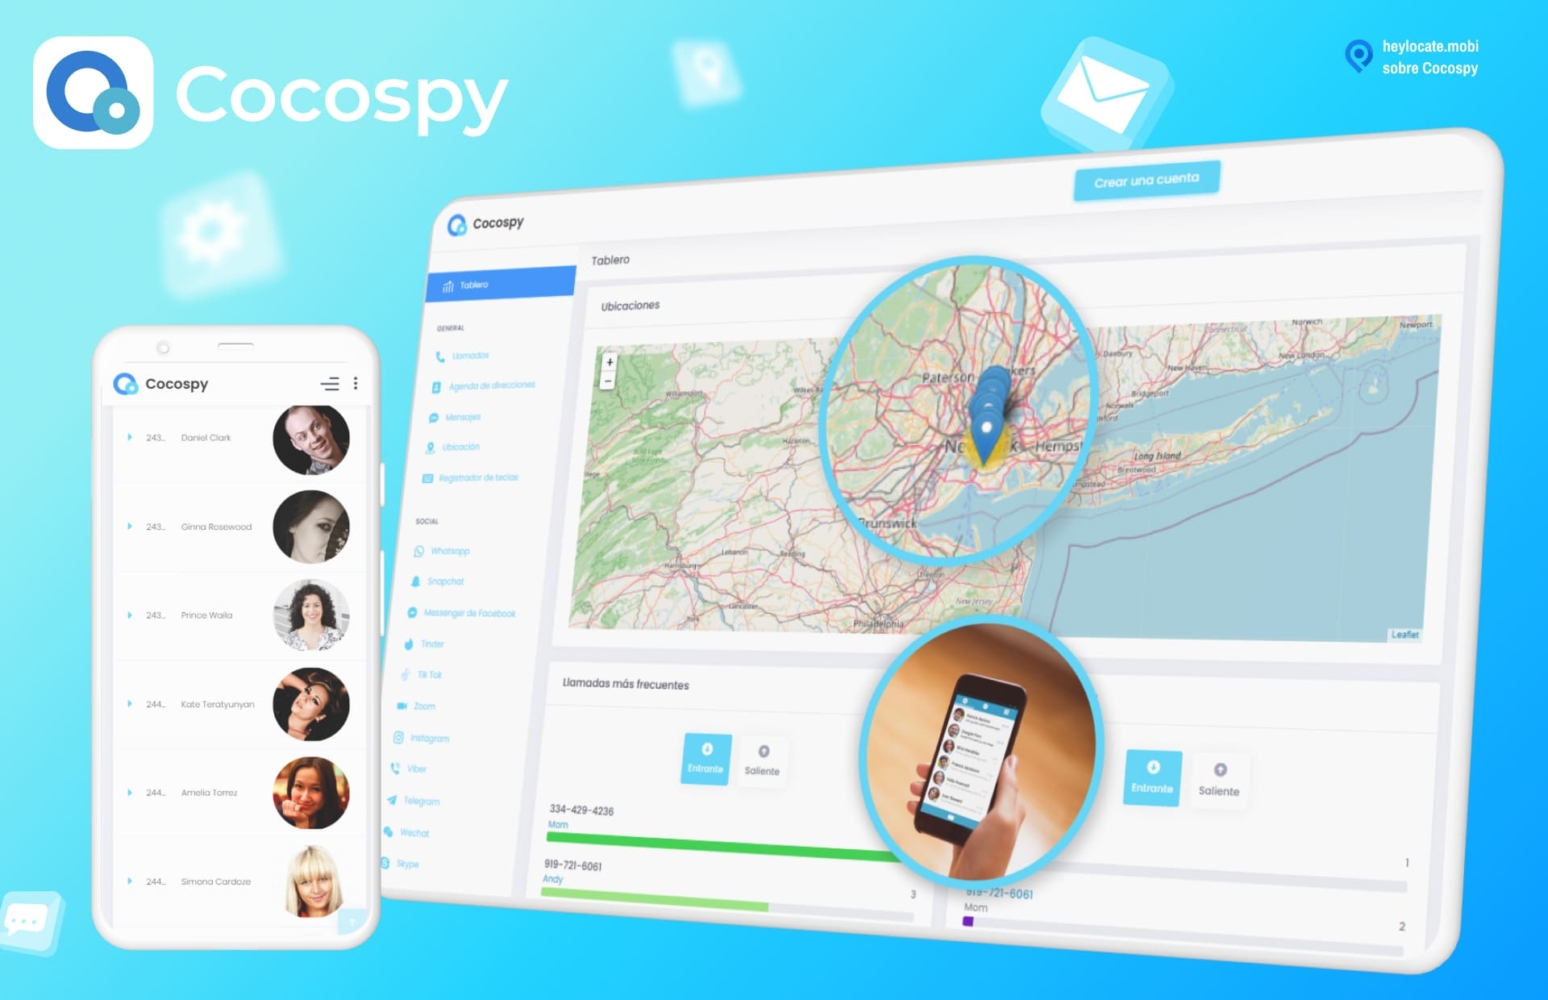 Imagen para Cocospy, mostrando un smartphone y un navegador con la interfaz de la aplicación mostrando un mapa con pines de localización, una lista de contactos, y una persona sosteniendo un smartphone haciendo una demostración de la aplicación